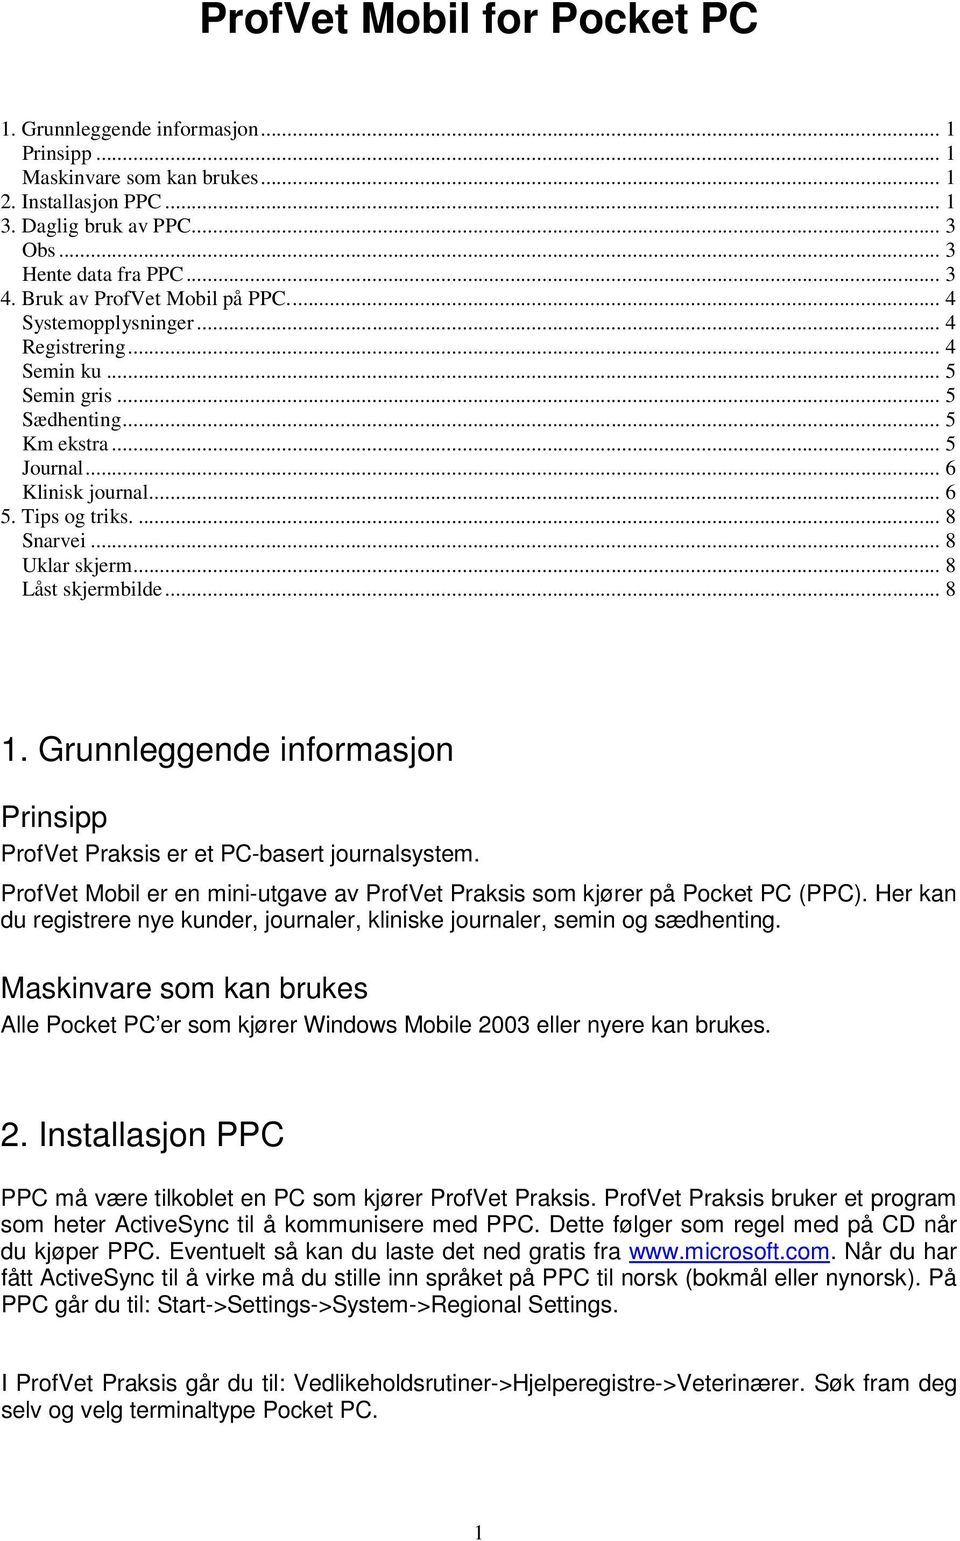 .. 8 Uklar skjerm... 8 Låst skjermbilde... 8 1. Grunnleggende informasjon Prinsipp ProfVet Praksis er et PC-basert journalsystem.